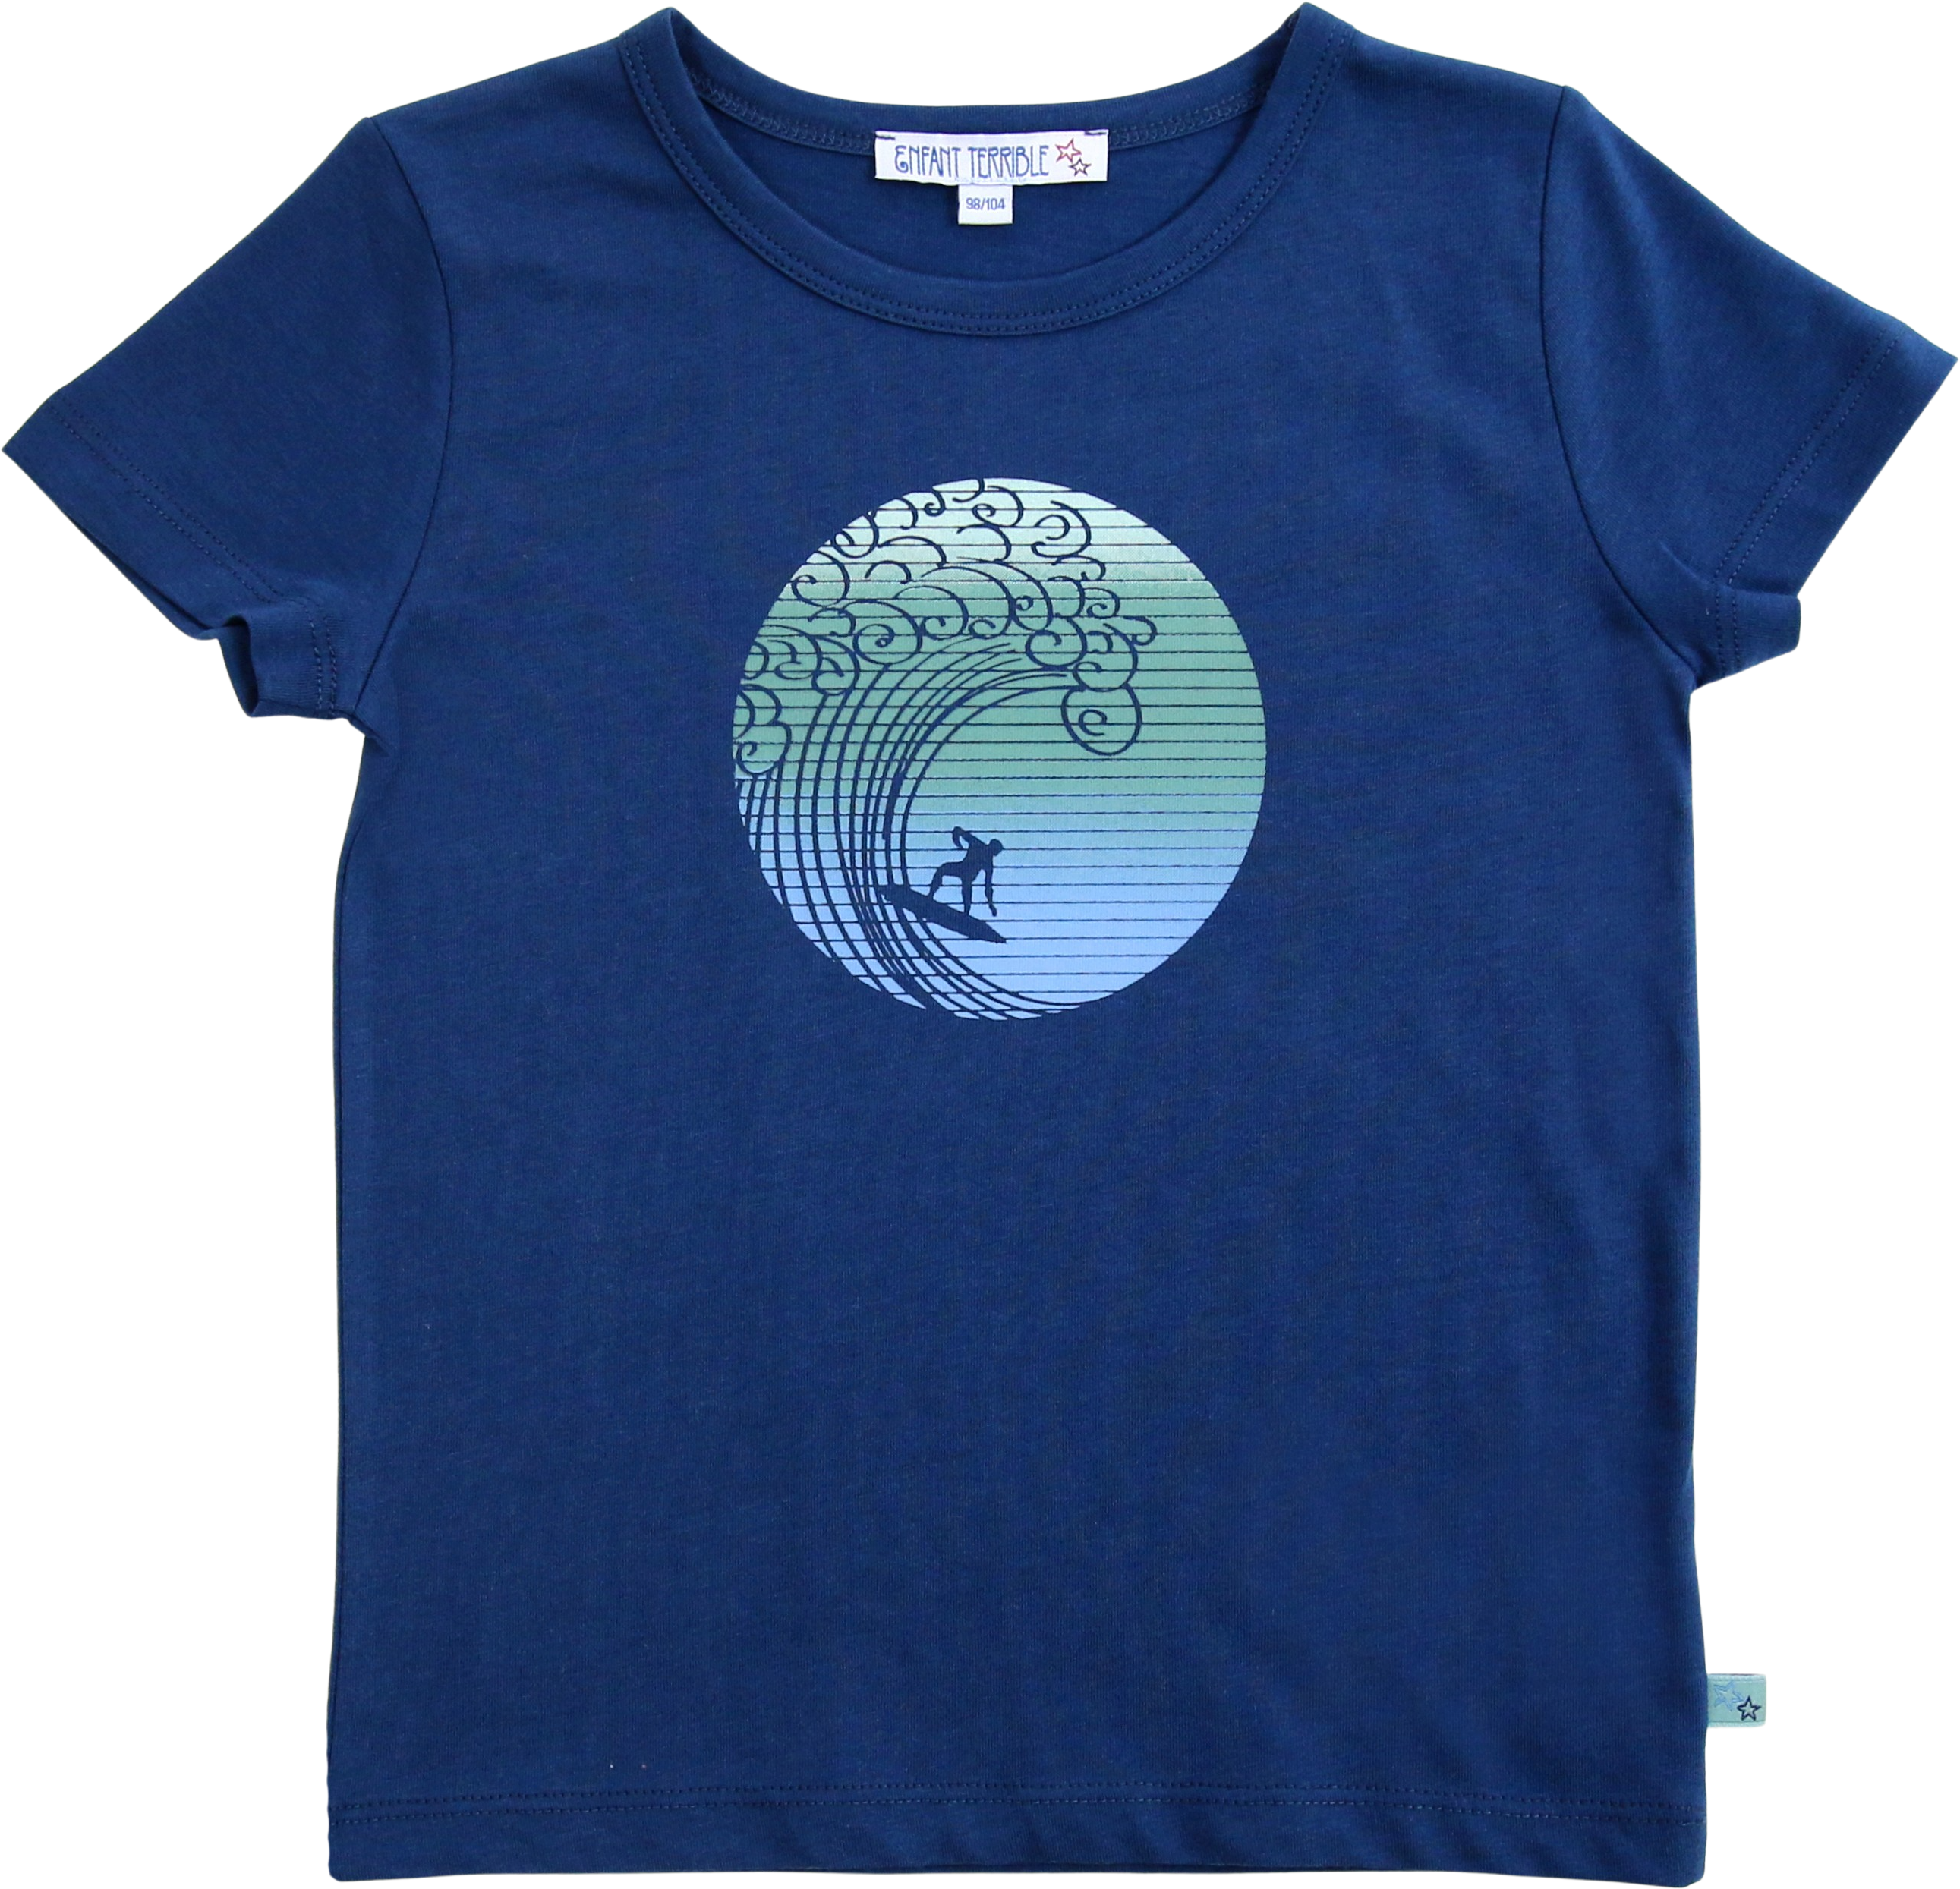 Kinder-Shirt mit Wellenreiter-Druck darkblue